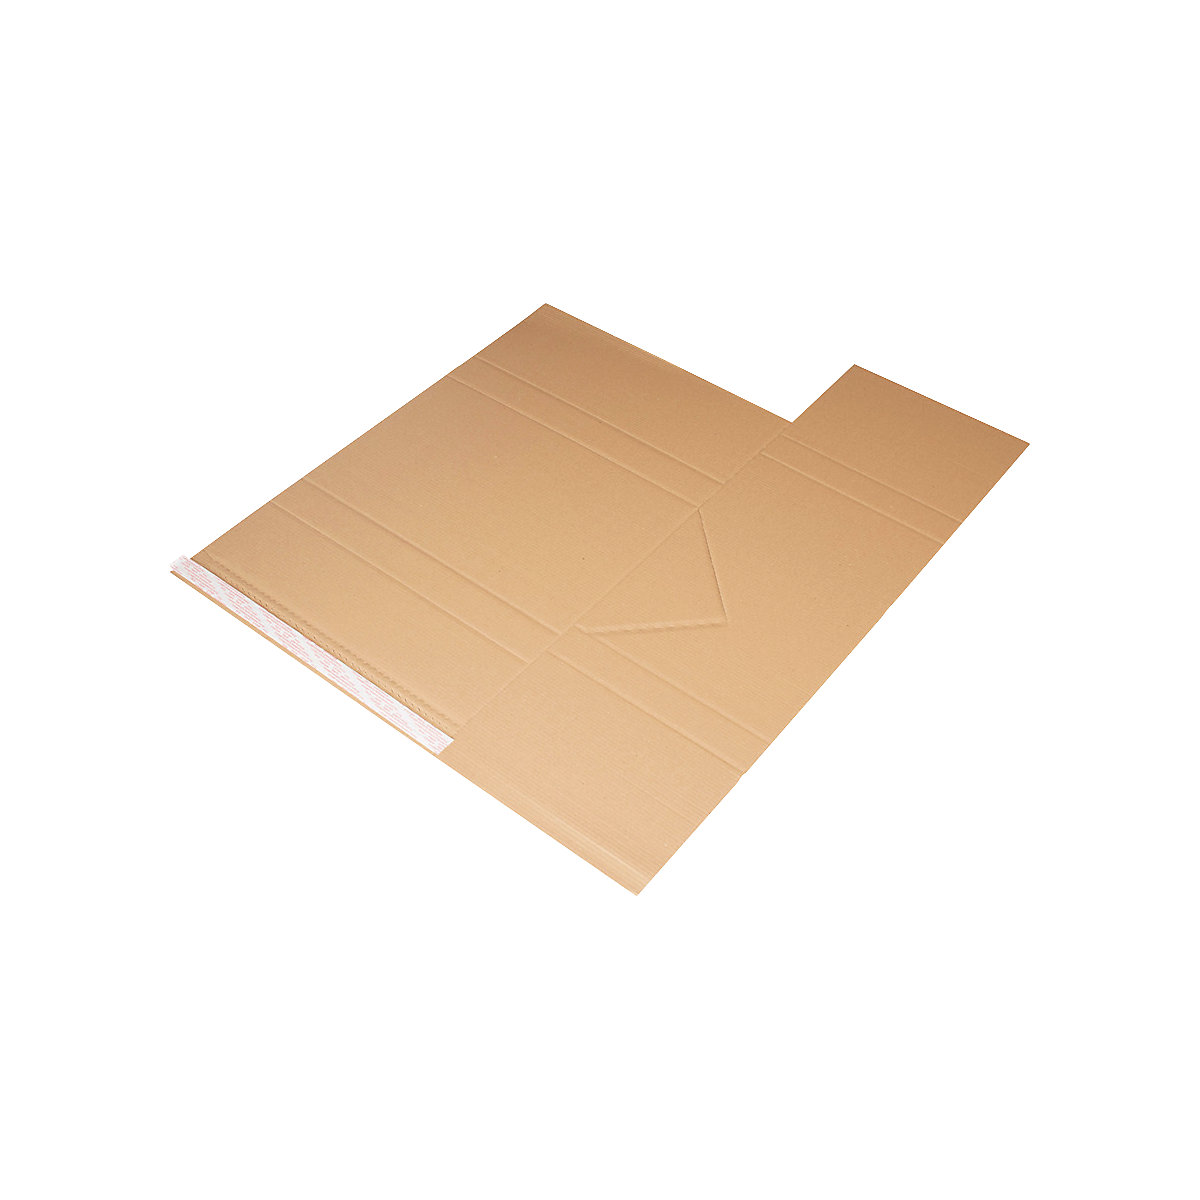 Imballaggio universale Drehfix – flow, con chiusura autoadesiva, lungh. x largh. 455 x 320 mm, a partire da 120 pz.-1